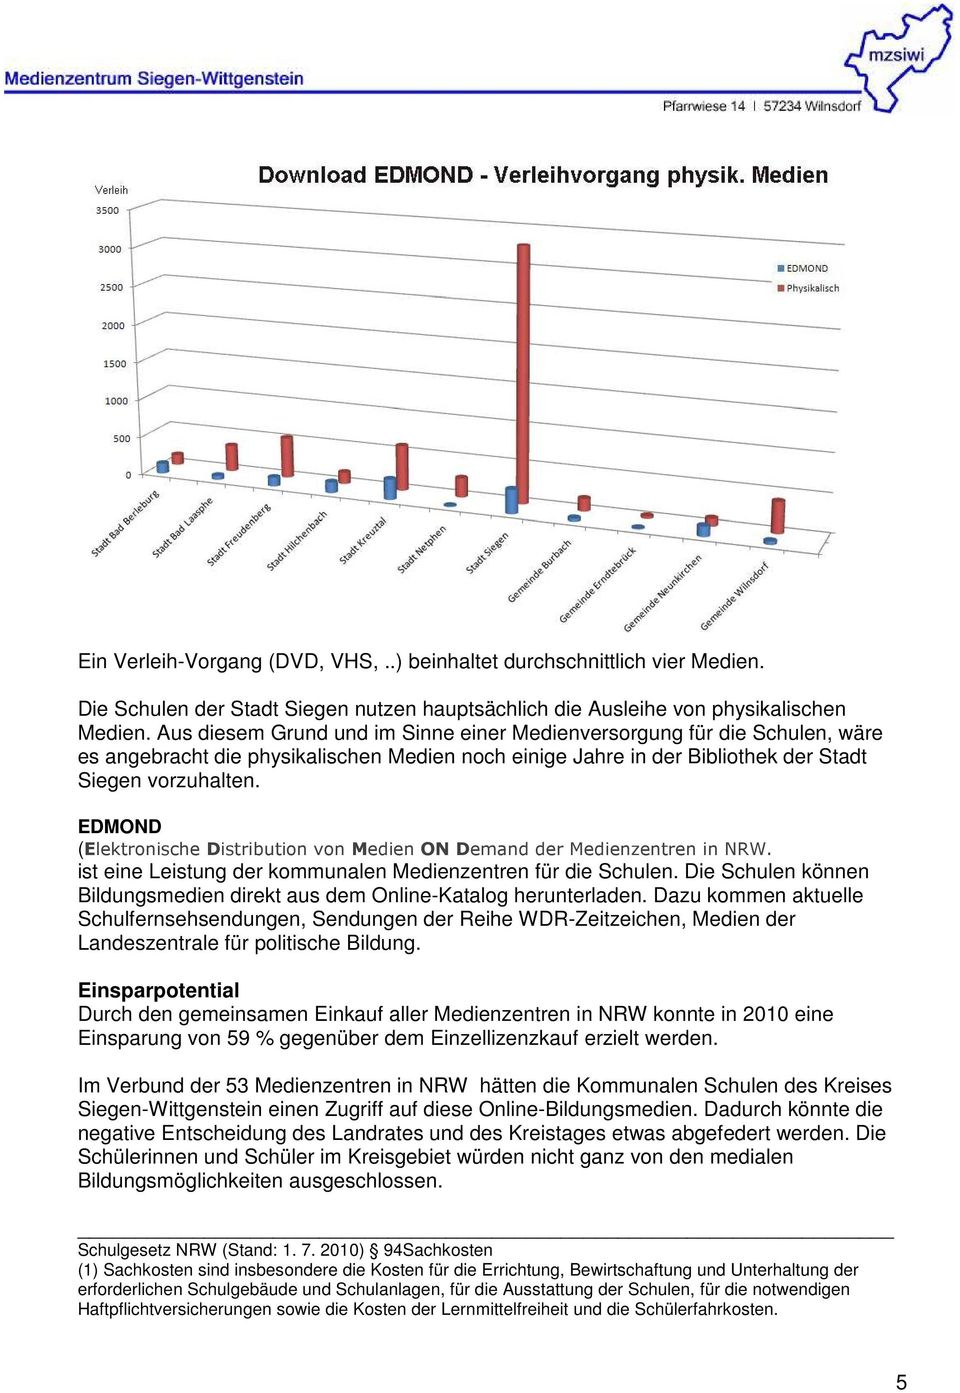 EDMOND (Elektronische Distribution von Medien ON Demand der Medienzentren in NRW. ist eine Leistung der kommunalen Medienzentren für die Schulen.